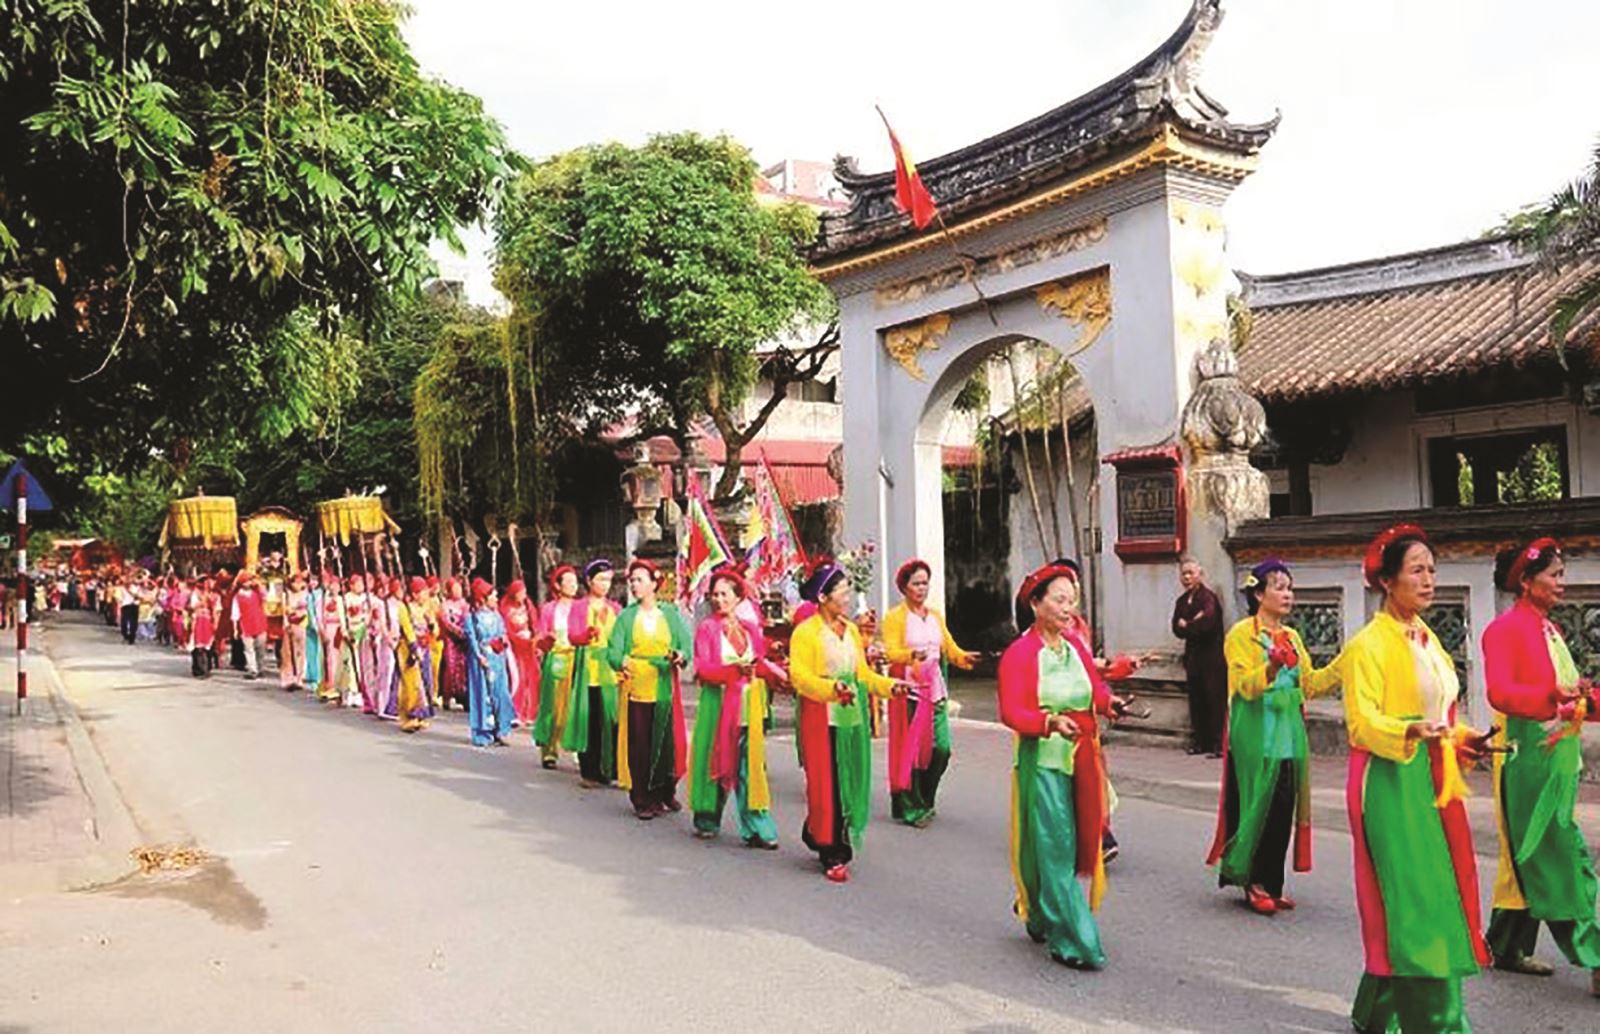 Hưng Yên: Phát huy giá trị văn hóa di sản góp phần phát triển kinh tế, xã hội 